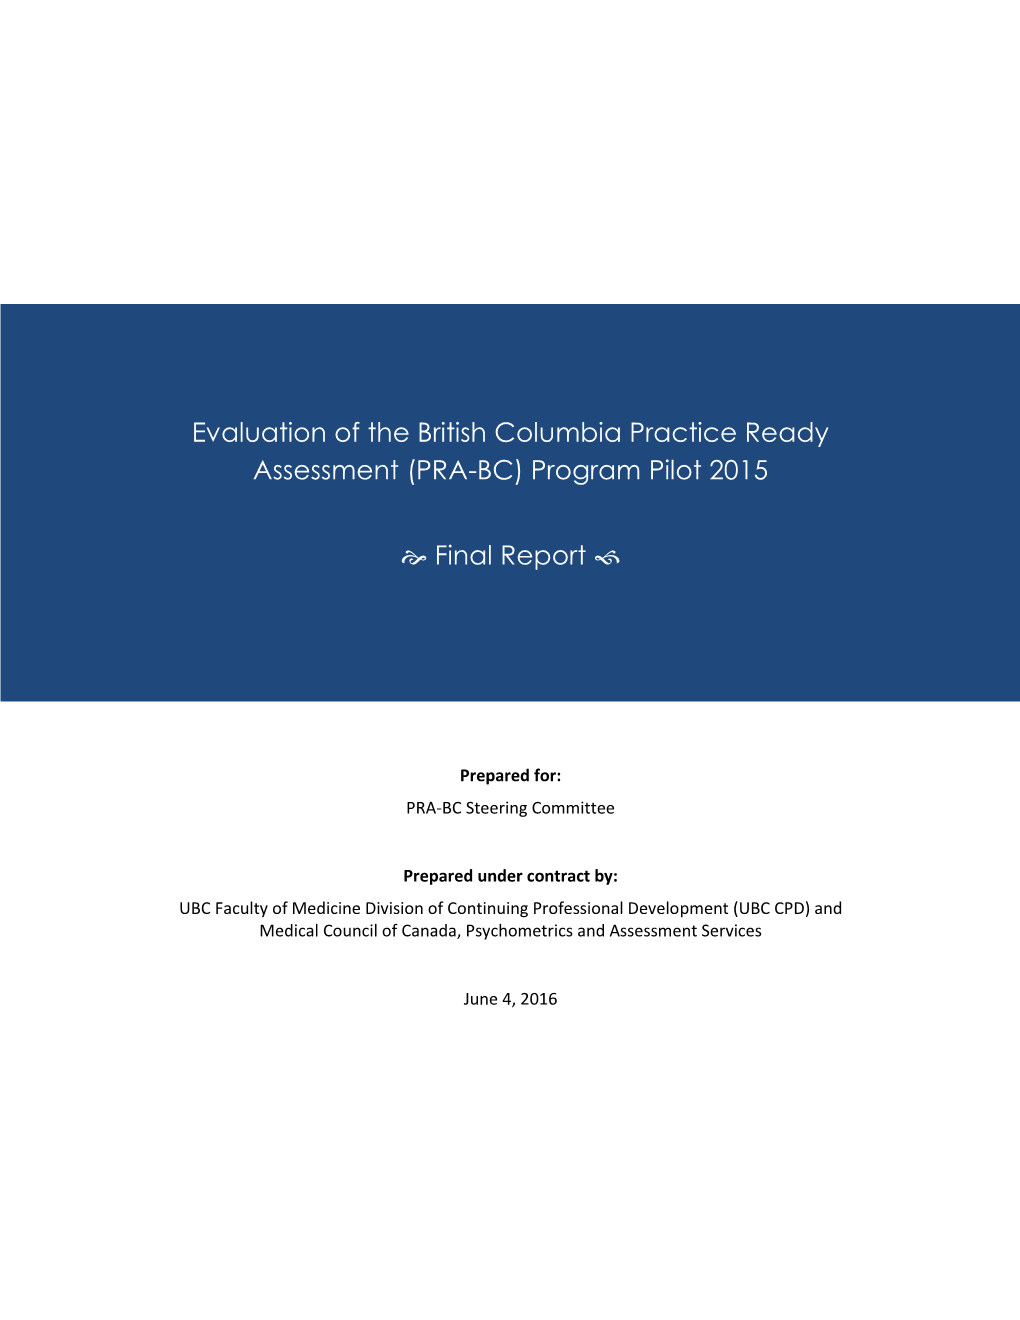 (PRA-BC) Program Pilot 2015 Final Report